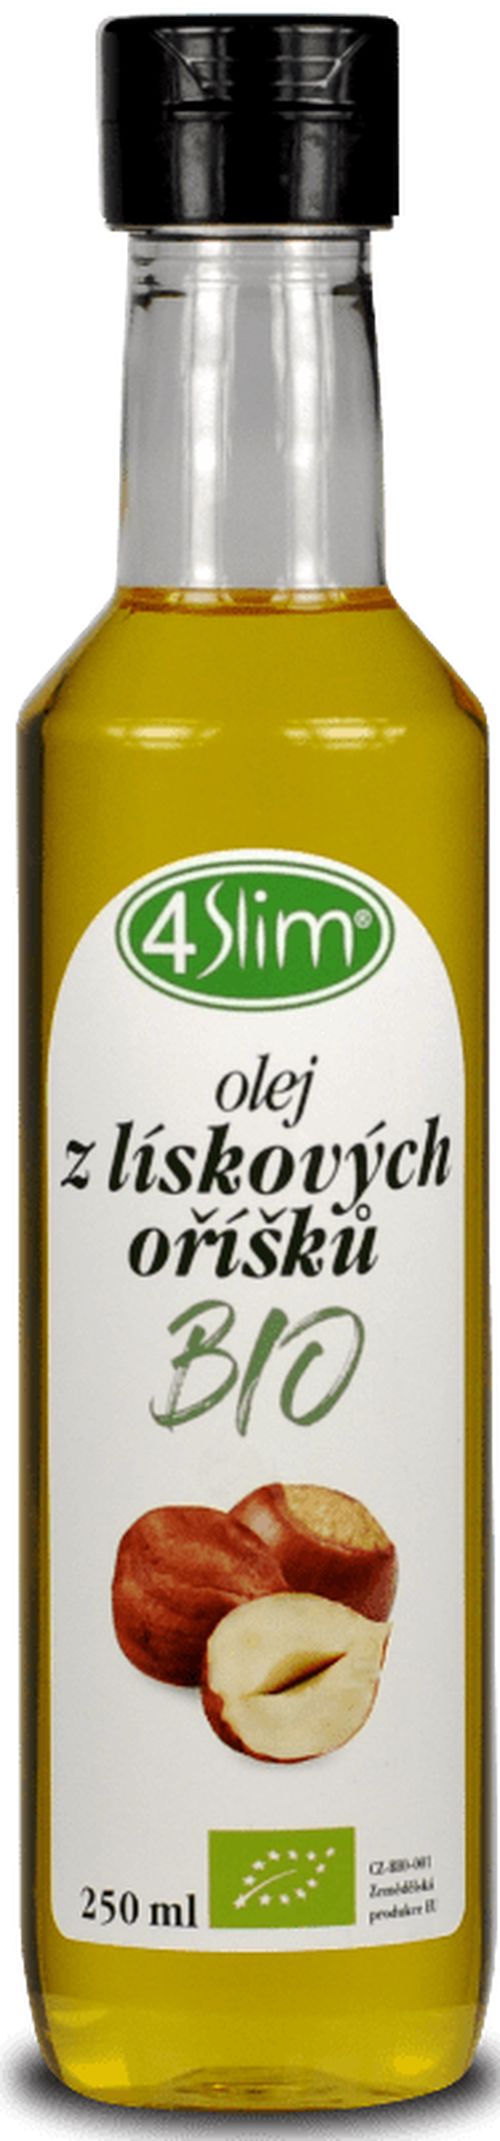 4Slim - Olej z lískových ořechů BIO 250ml *CZ-BIO-001